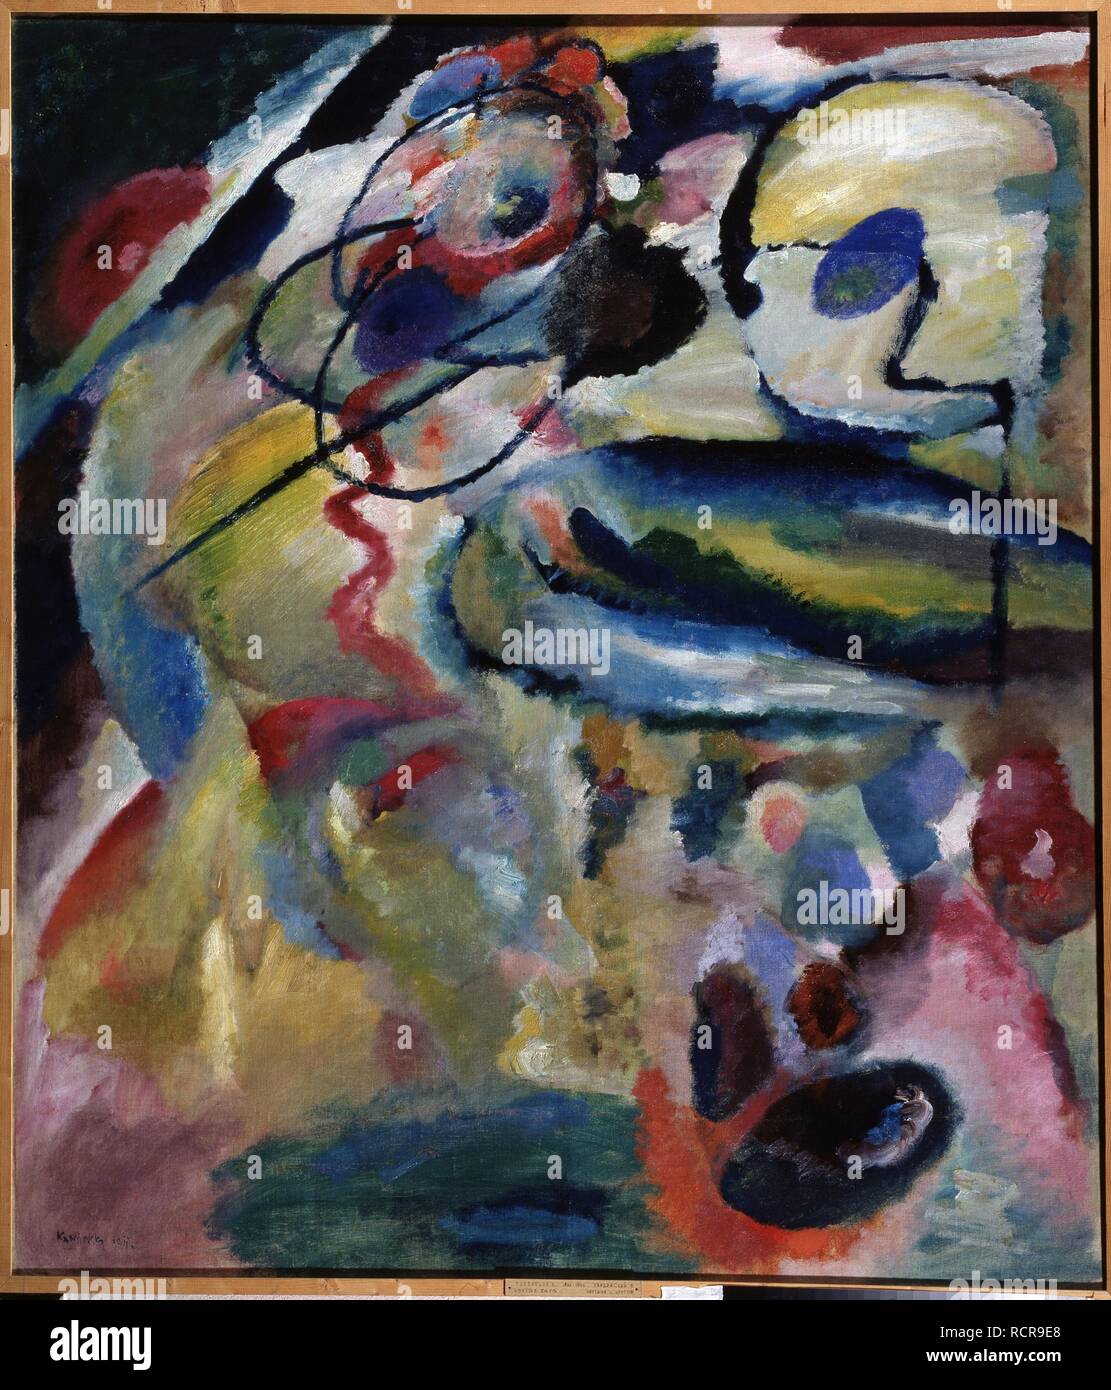 Die ersten abstrakten Malerei mit einem Kreis. Museum: Staatliche georgische Kunst Museum, Tiflis (Tbilisi). Autor: Kandinsky, Wassily Wassiljewitsch. Stockfoto